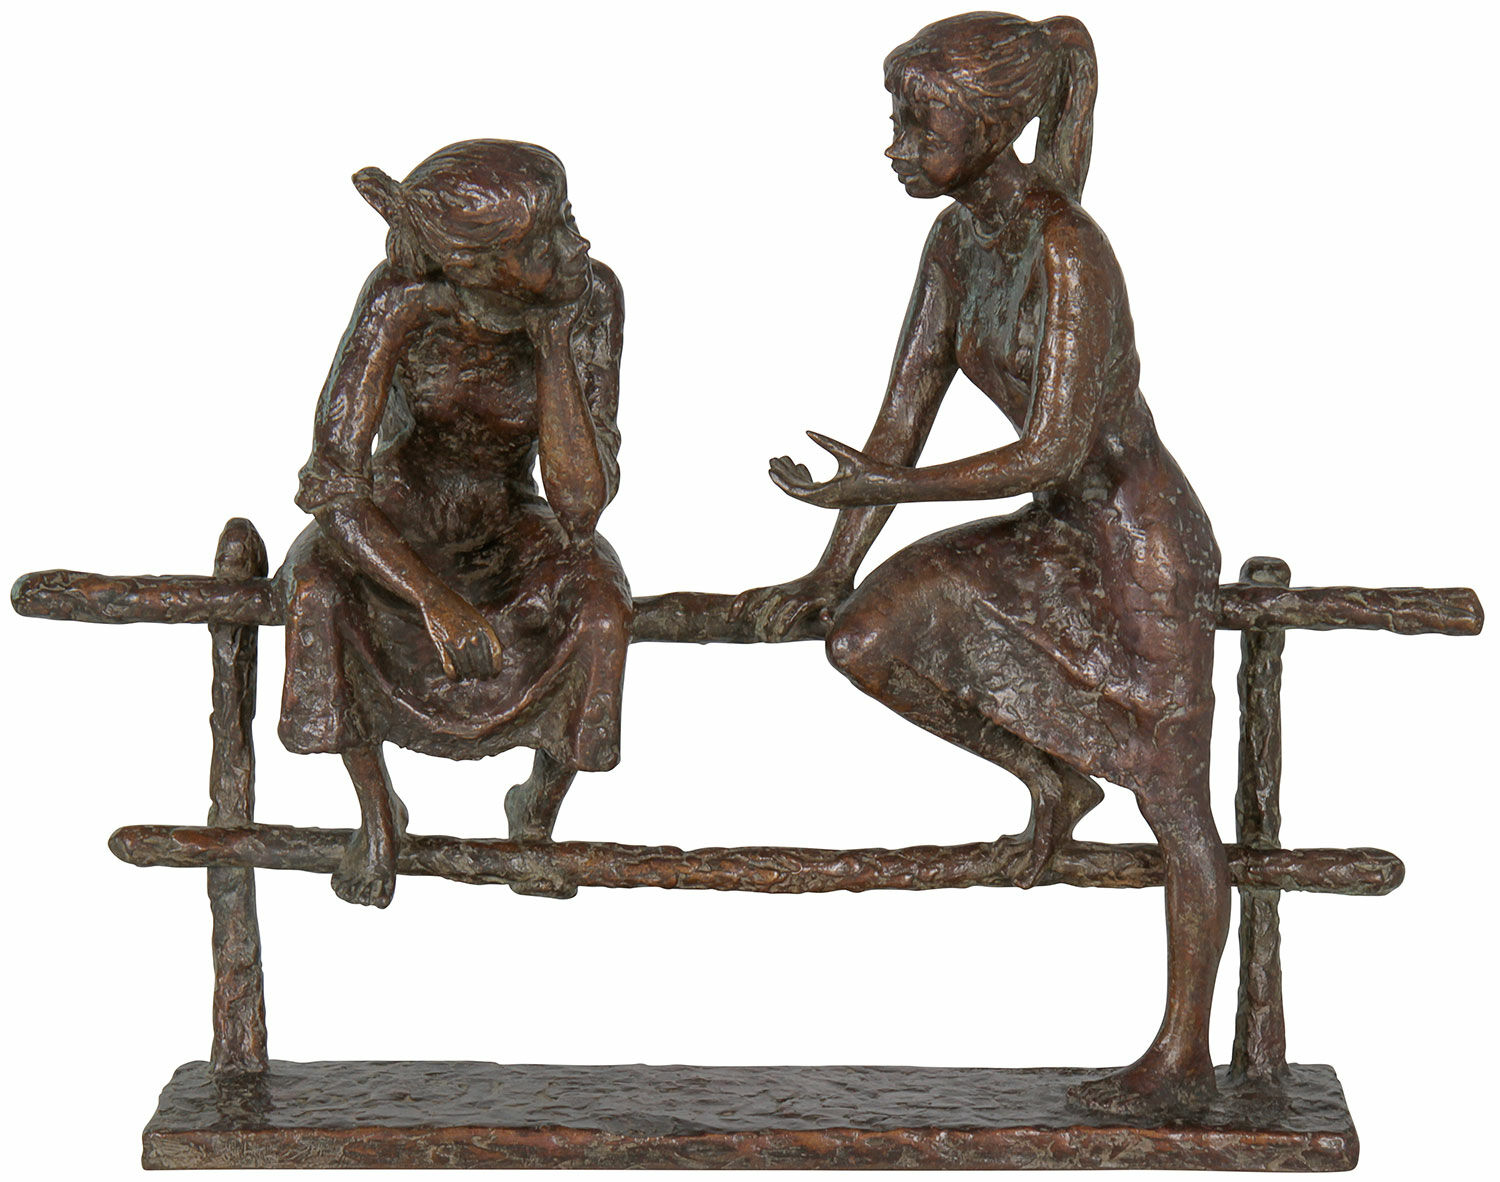 Skulptur "Dialog", bronze von Jürgen Ebert